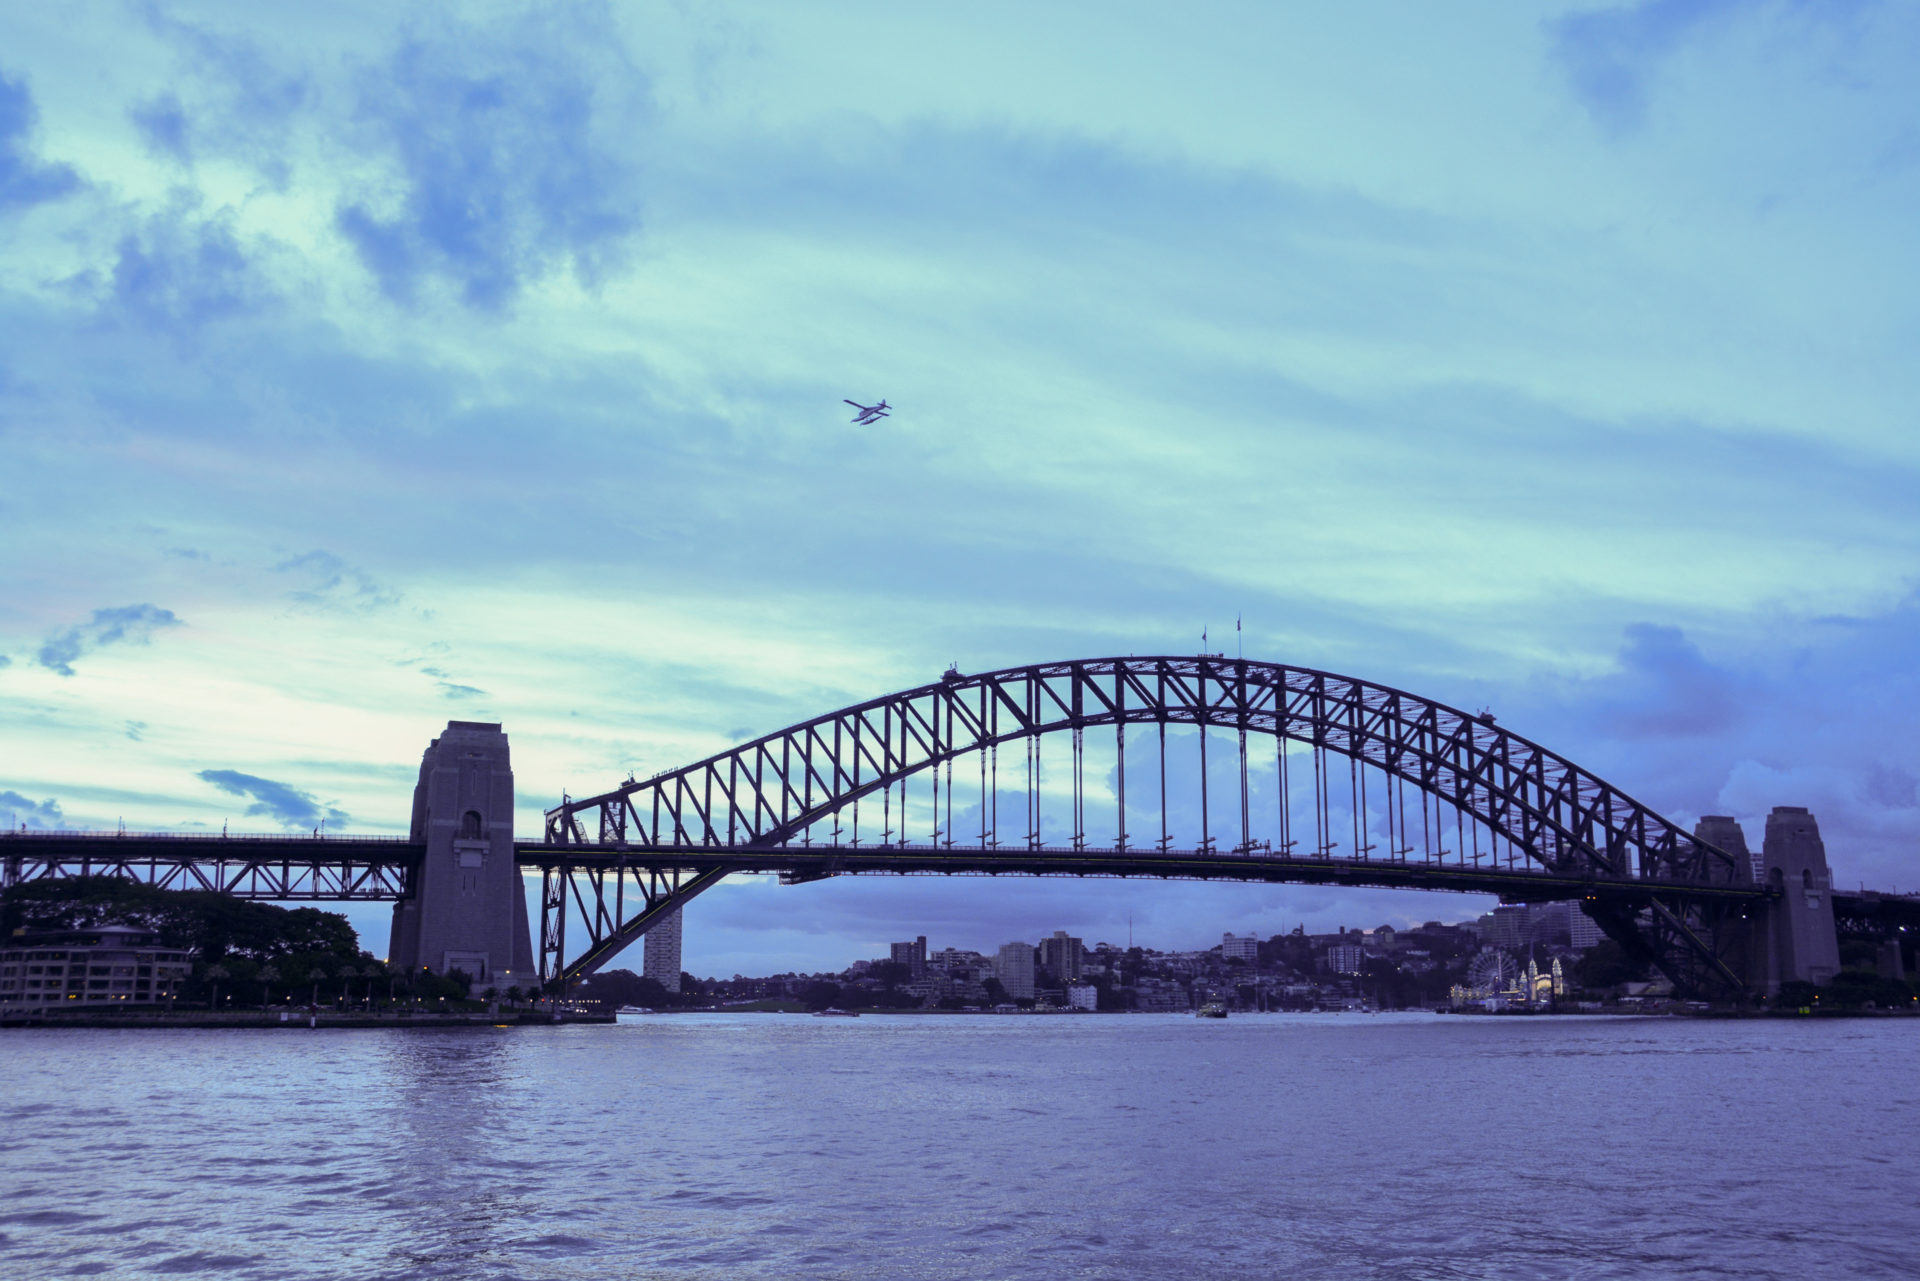 Wasserflugzeug über der Harbour Bridge in Sydney im Abendlicht